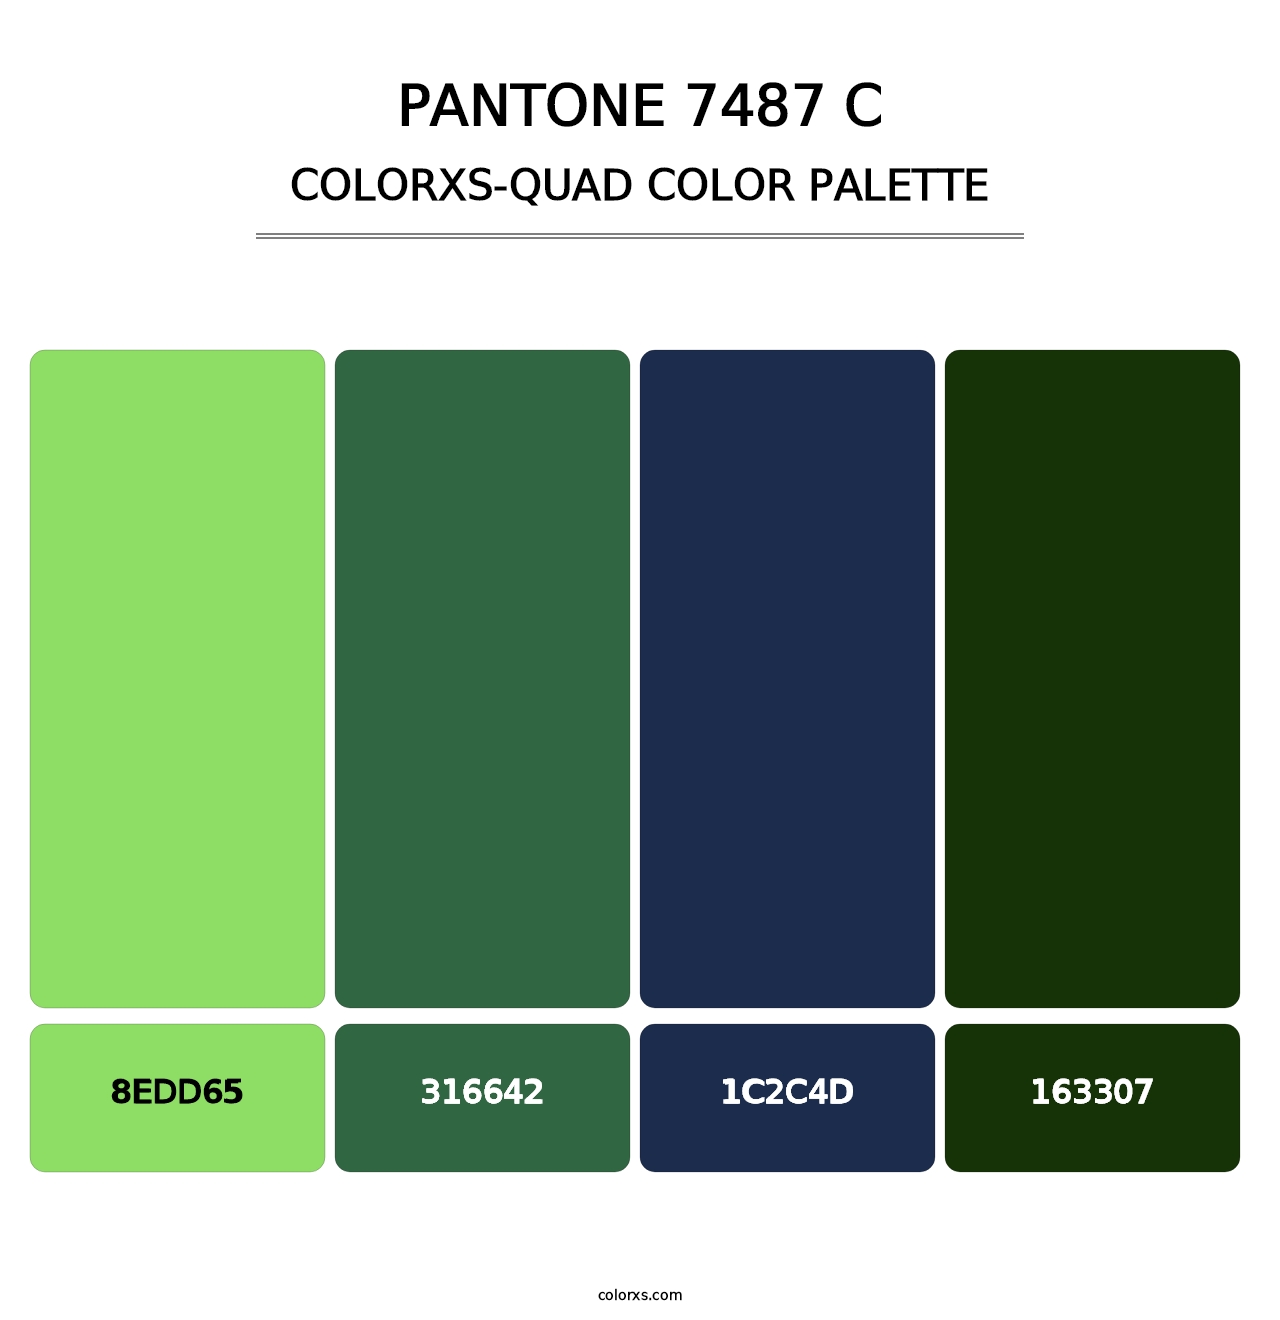 PANTONE 7487 C - Colorxs Quad Palette